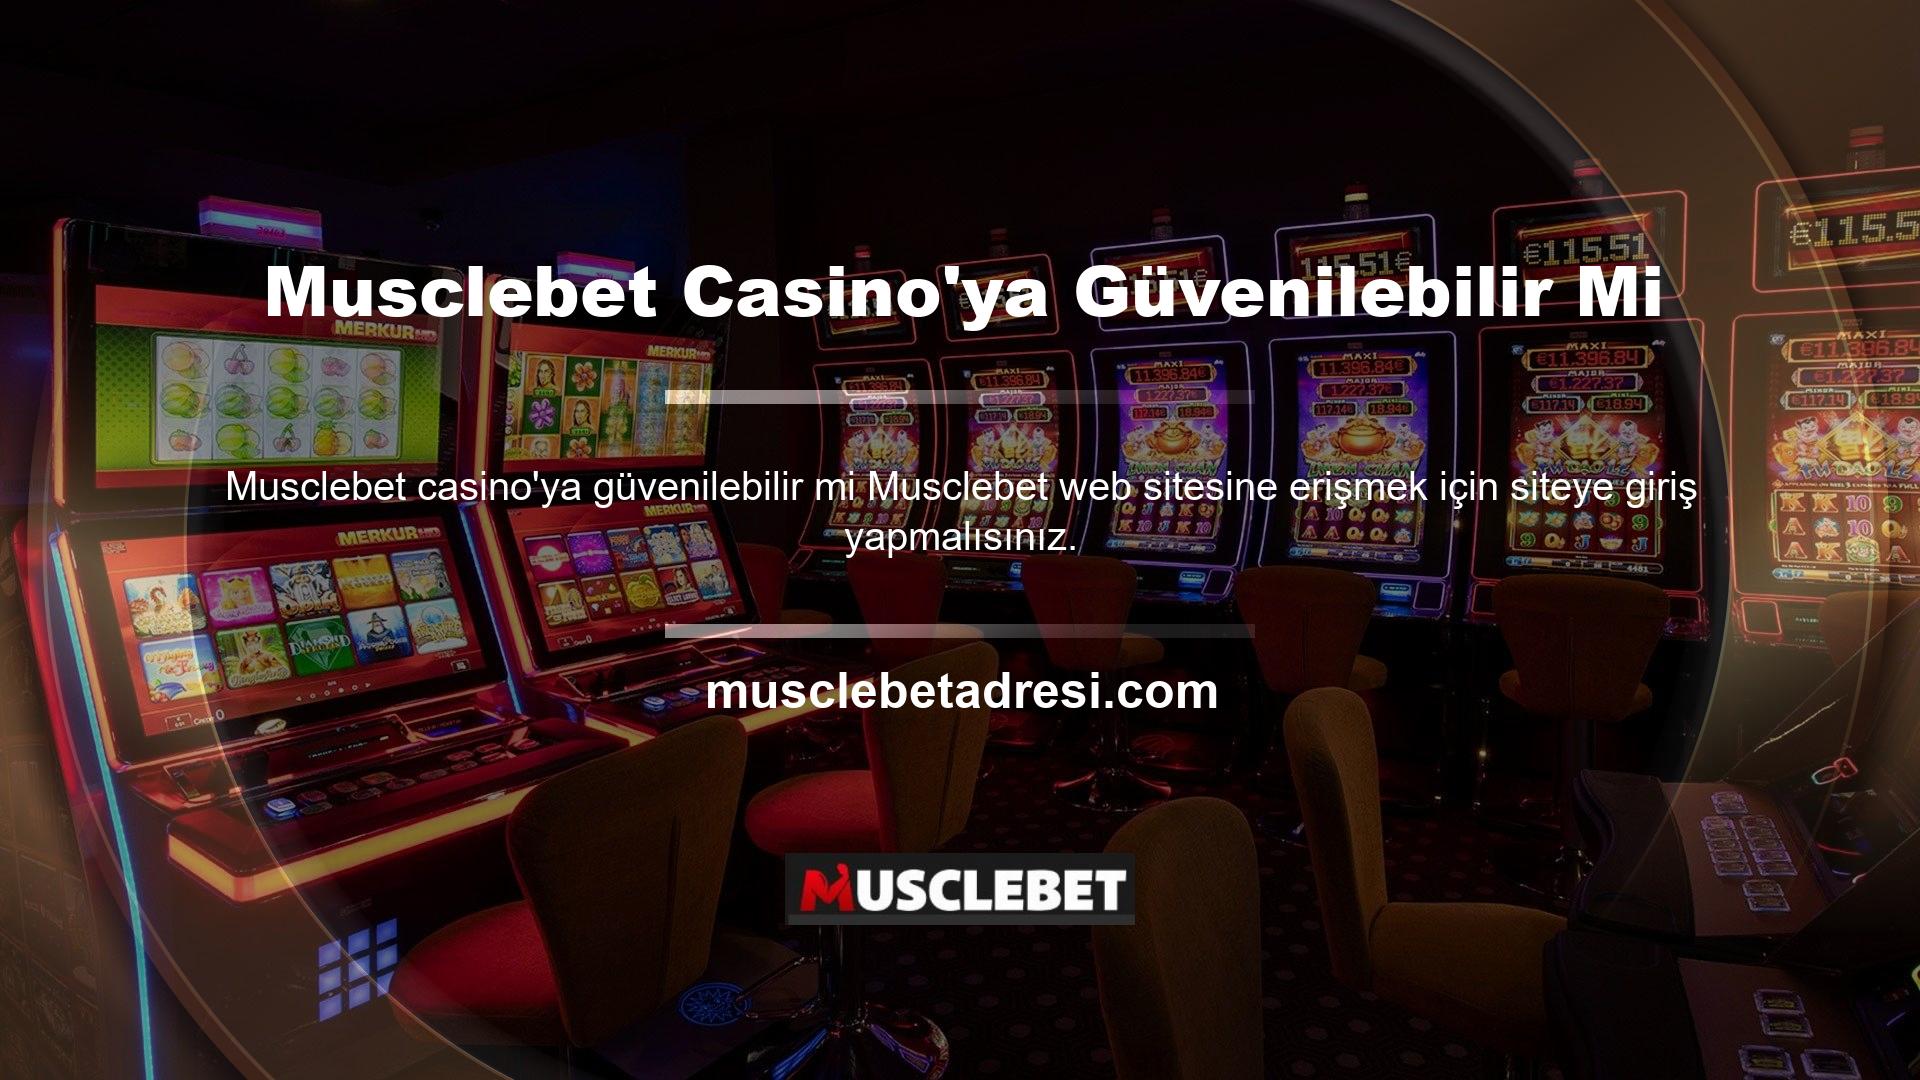 Musclebet bahis sitelerindeki geniş casino oyunları yelpazesi nedeniyle güvenlik en büyük önceliktir